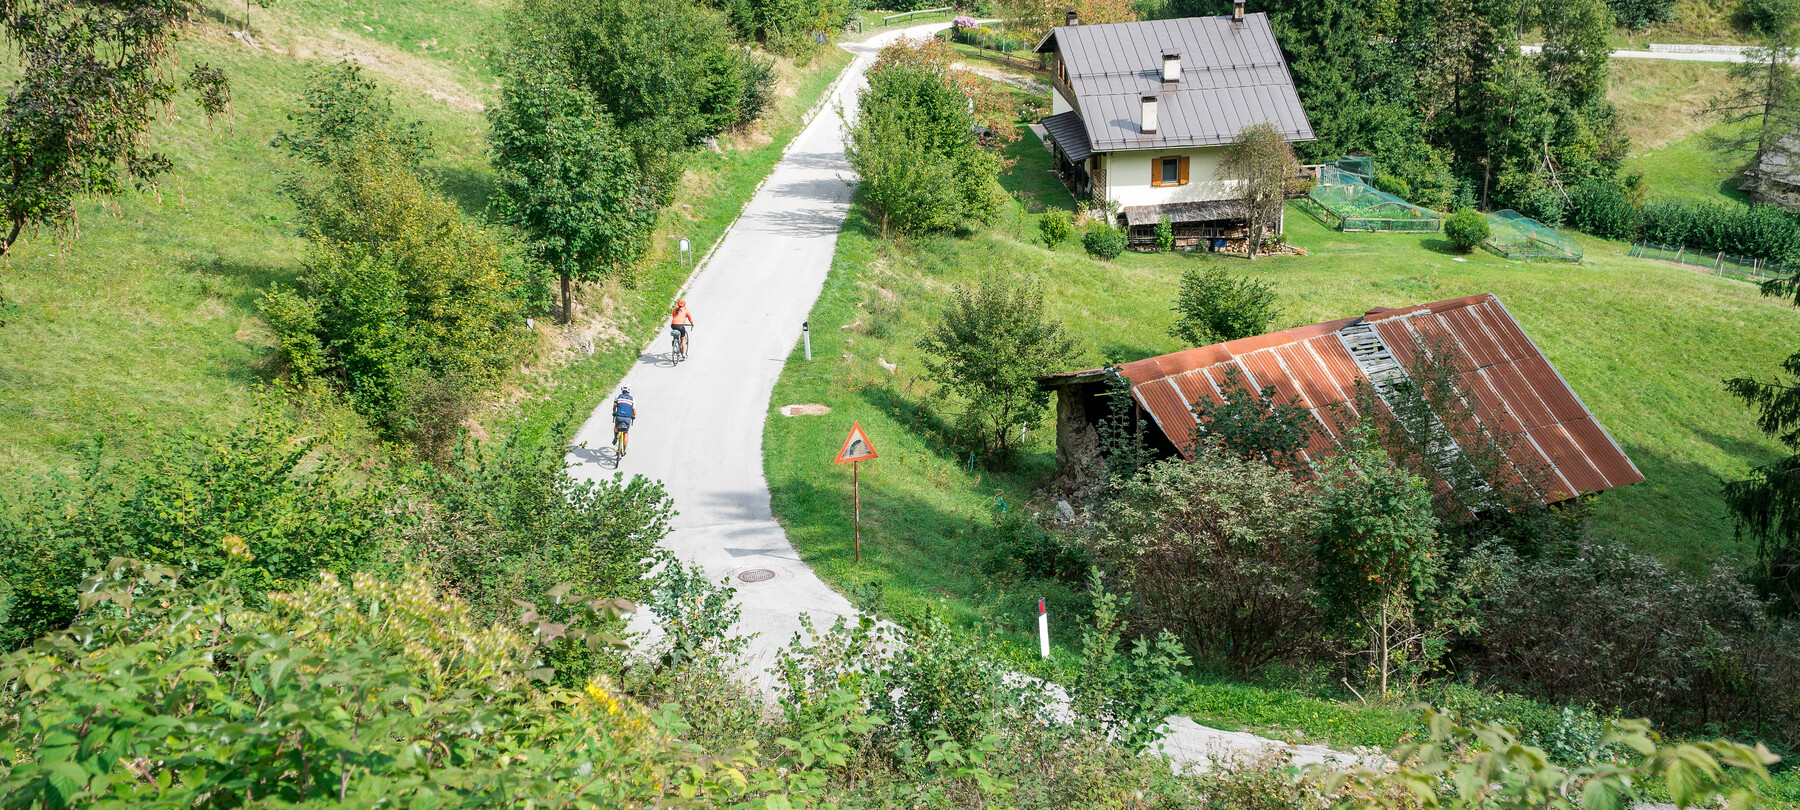 Do-Ga-Radweg: mit dem Rad von den Dolomiten zum Gardasee